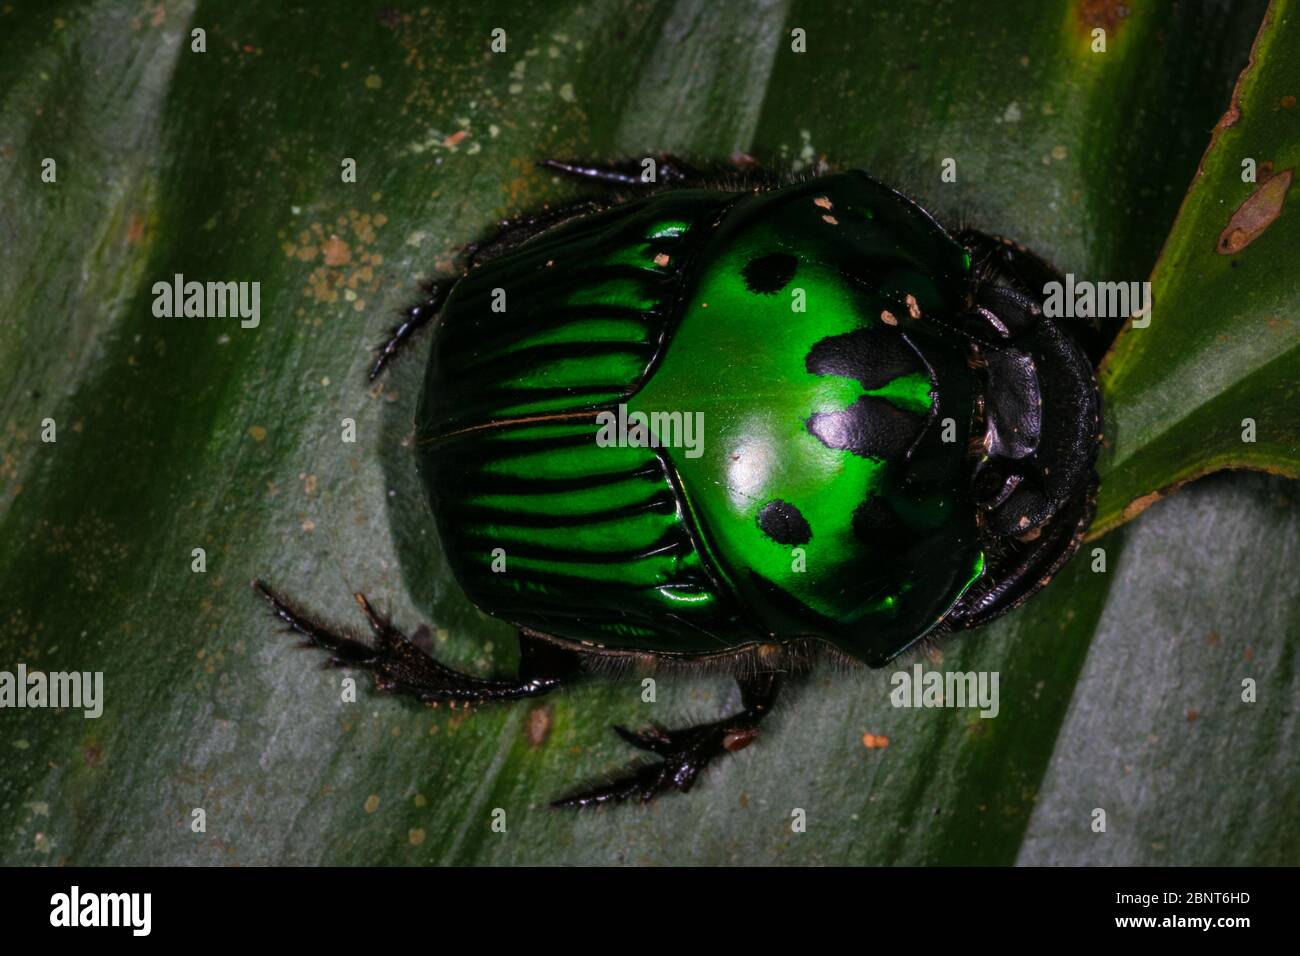 Escarabajo verde y negro en la exuberante selva tropical de Cerro Pirre, Parque Nacional Darien, provincia de Darien, República de Panamá, Centroamérica. Foto de stock